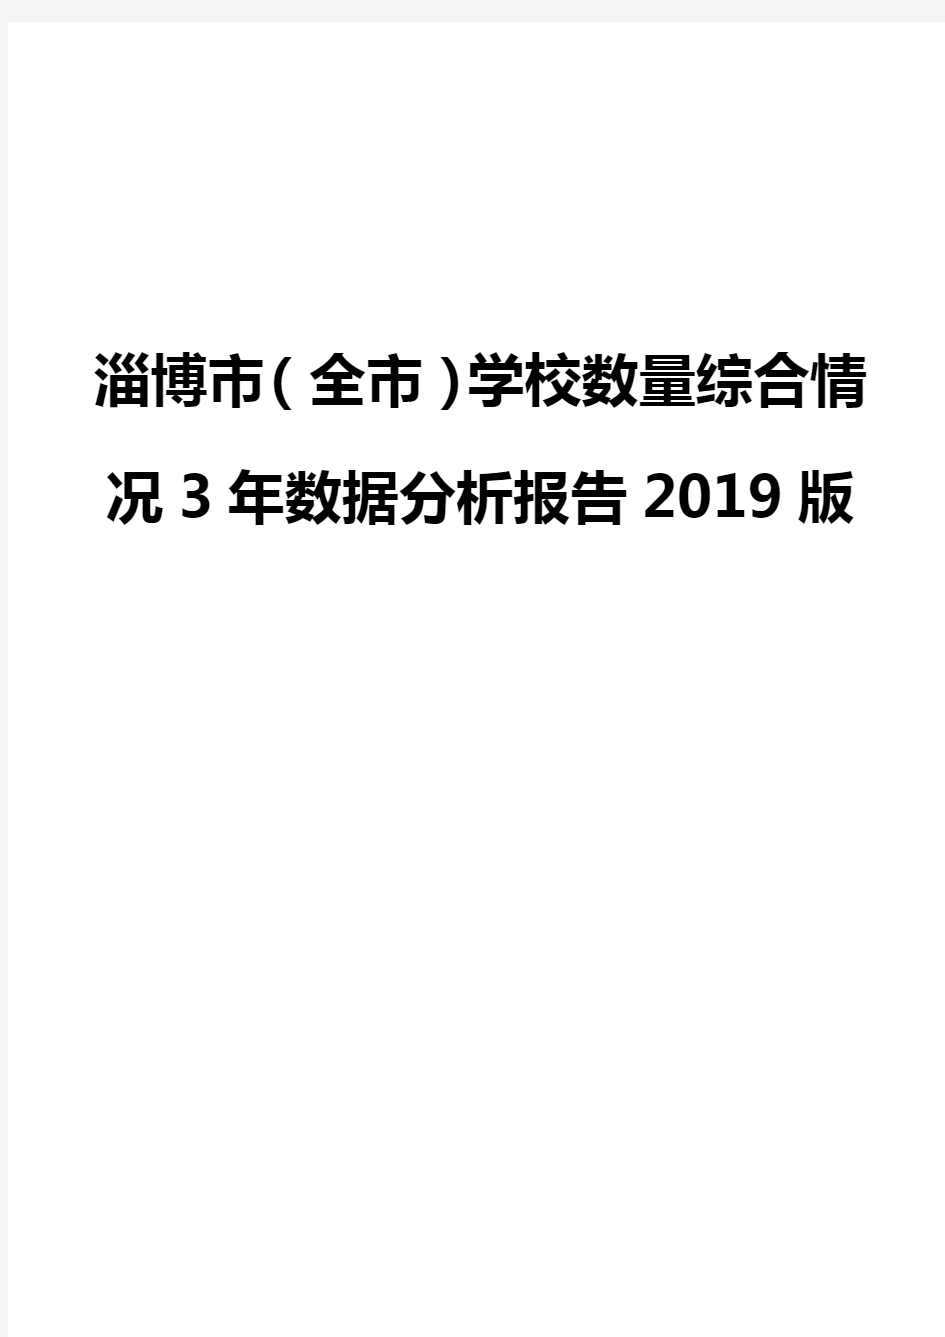 淄博市(全市)学校数量综合情况3年数据分析报告2019版